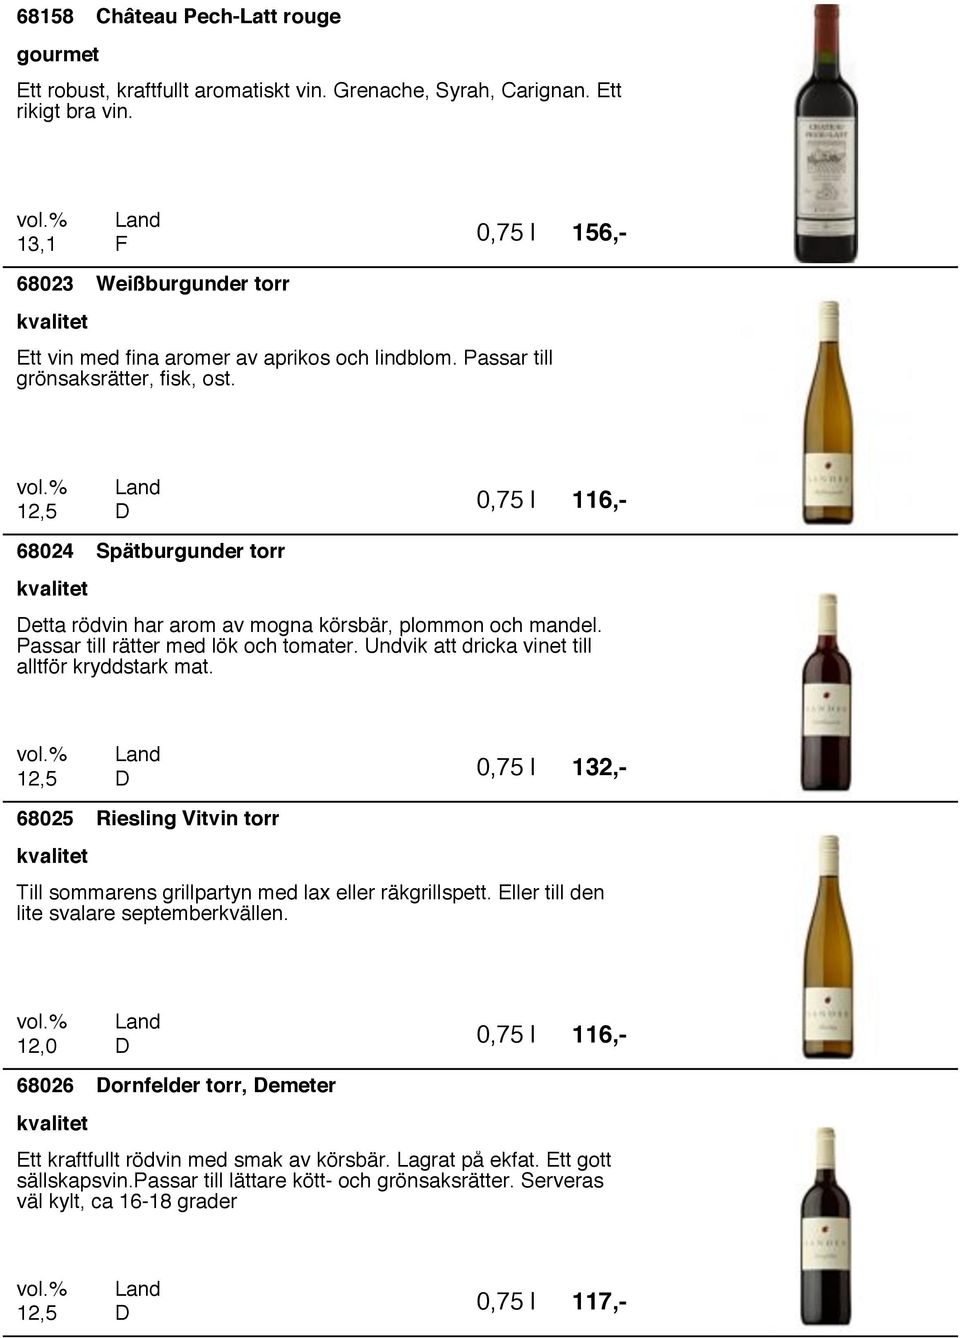 116,- 6824 Spätburgunder torr etta rödvin har arom av mogna körsbär, plommon och mandel. Passar till rätter med lök och tomater. Undvik att dricka vinet till alltför kryddstark mat.